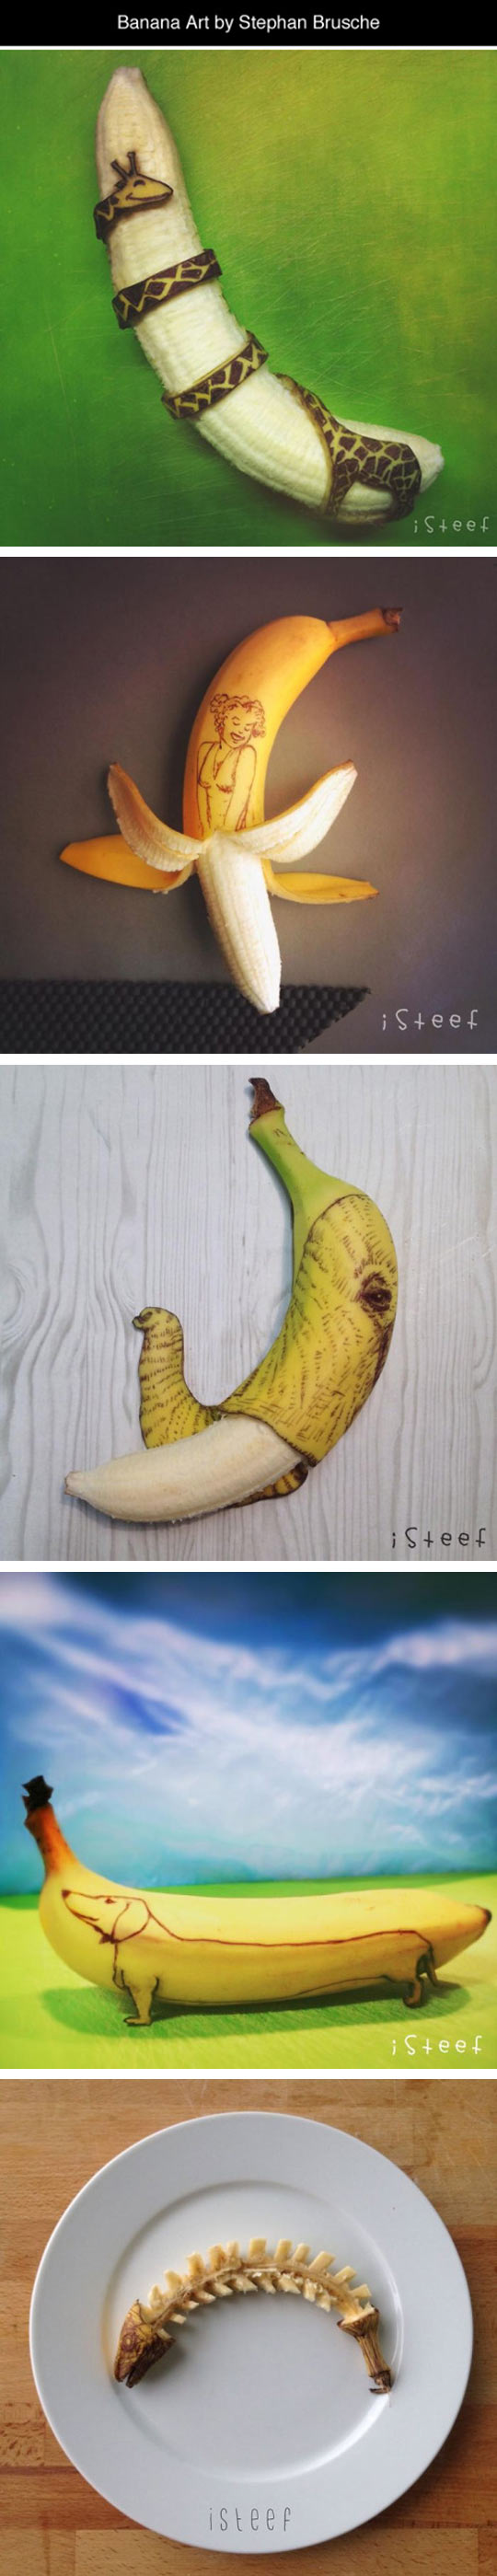 Banana Art By Stephan Brusche